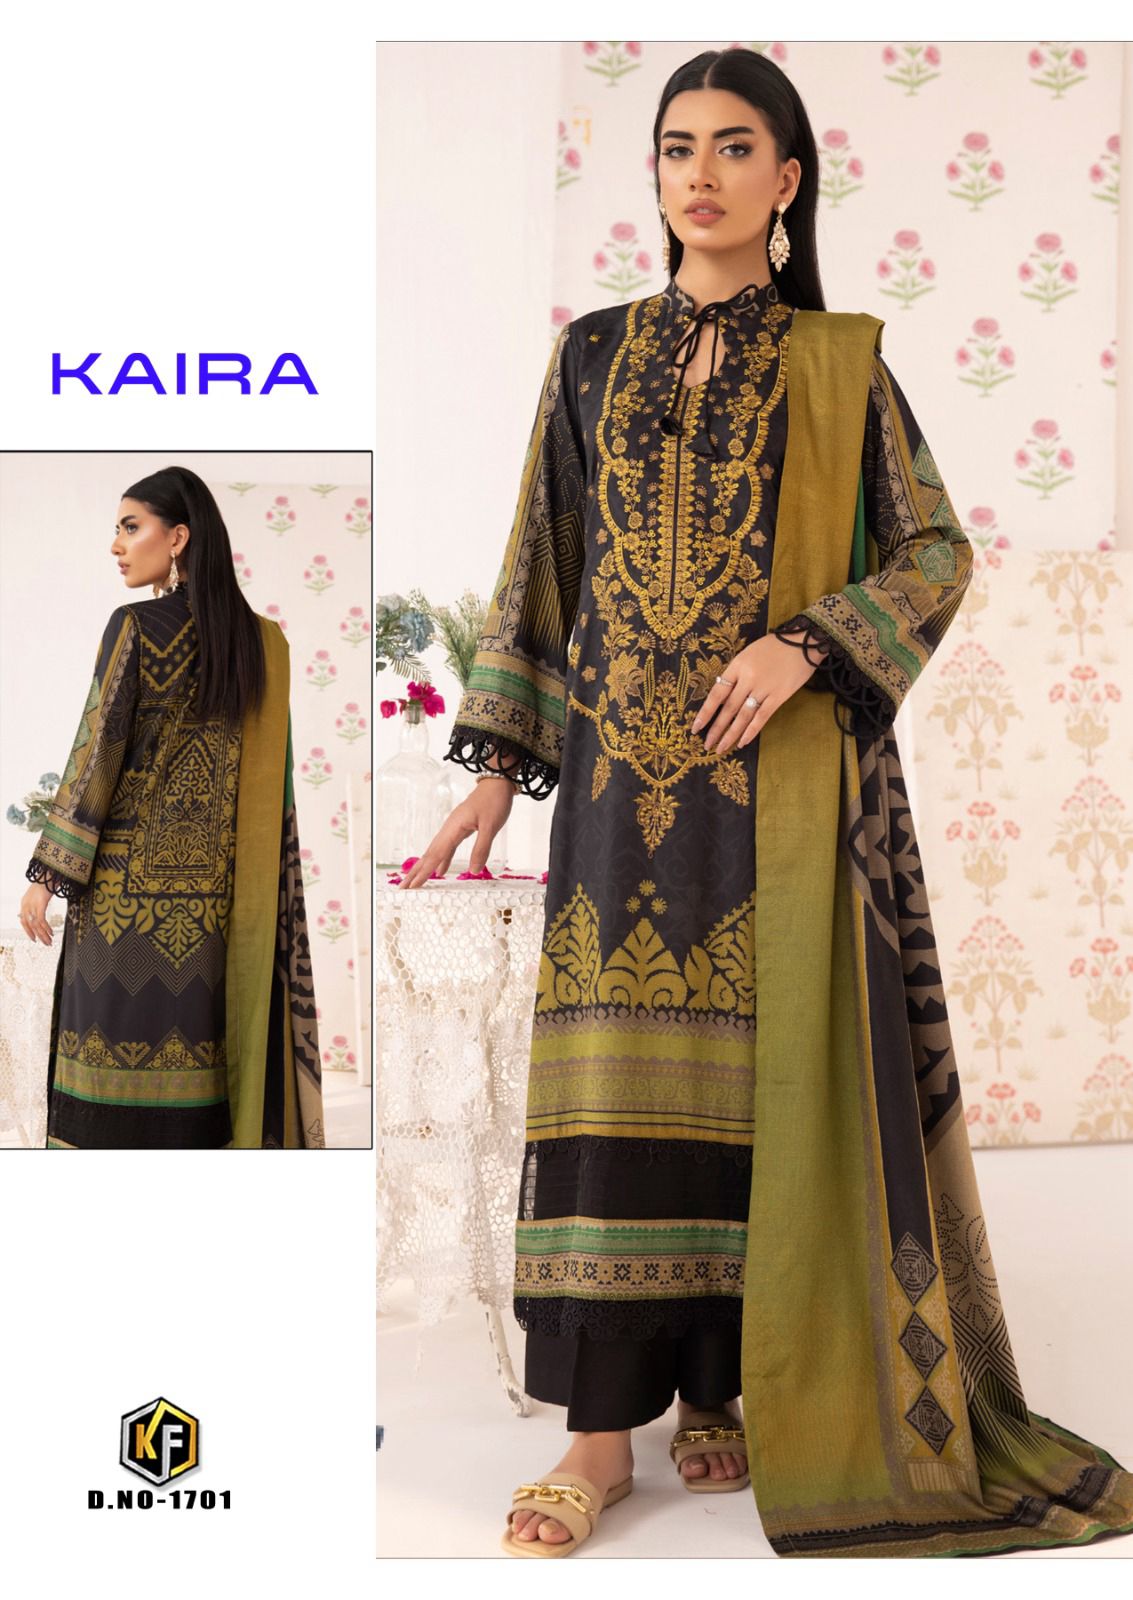 Kaira Vol 17 Keval Fab Lawn Cotton Karachi Salwar Suits